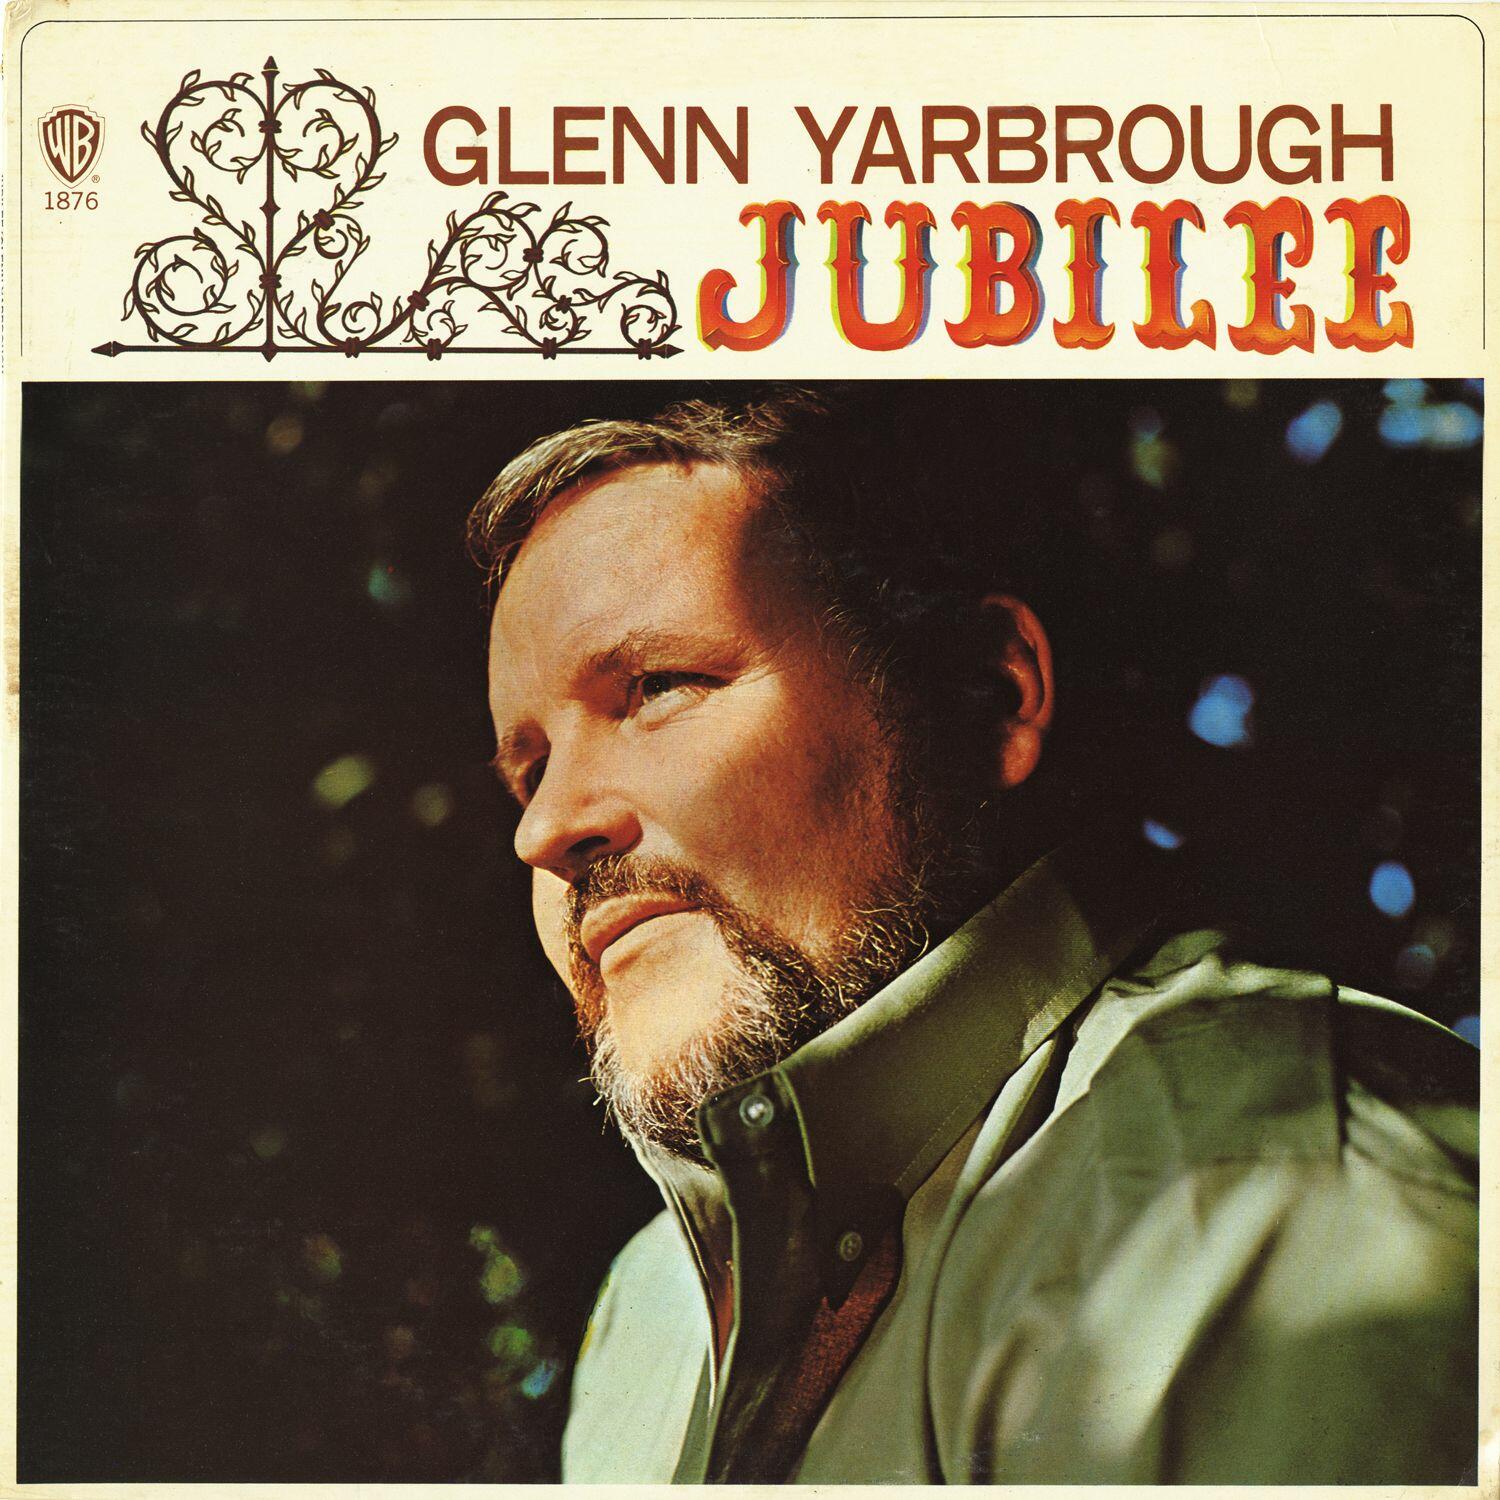 glenn yarbrough artist 1970 jubilee album listen